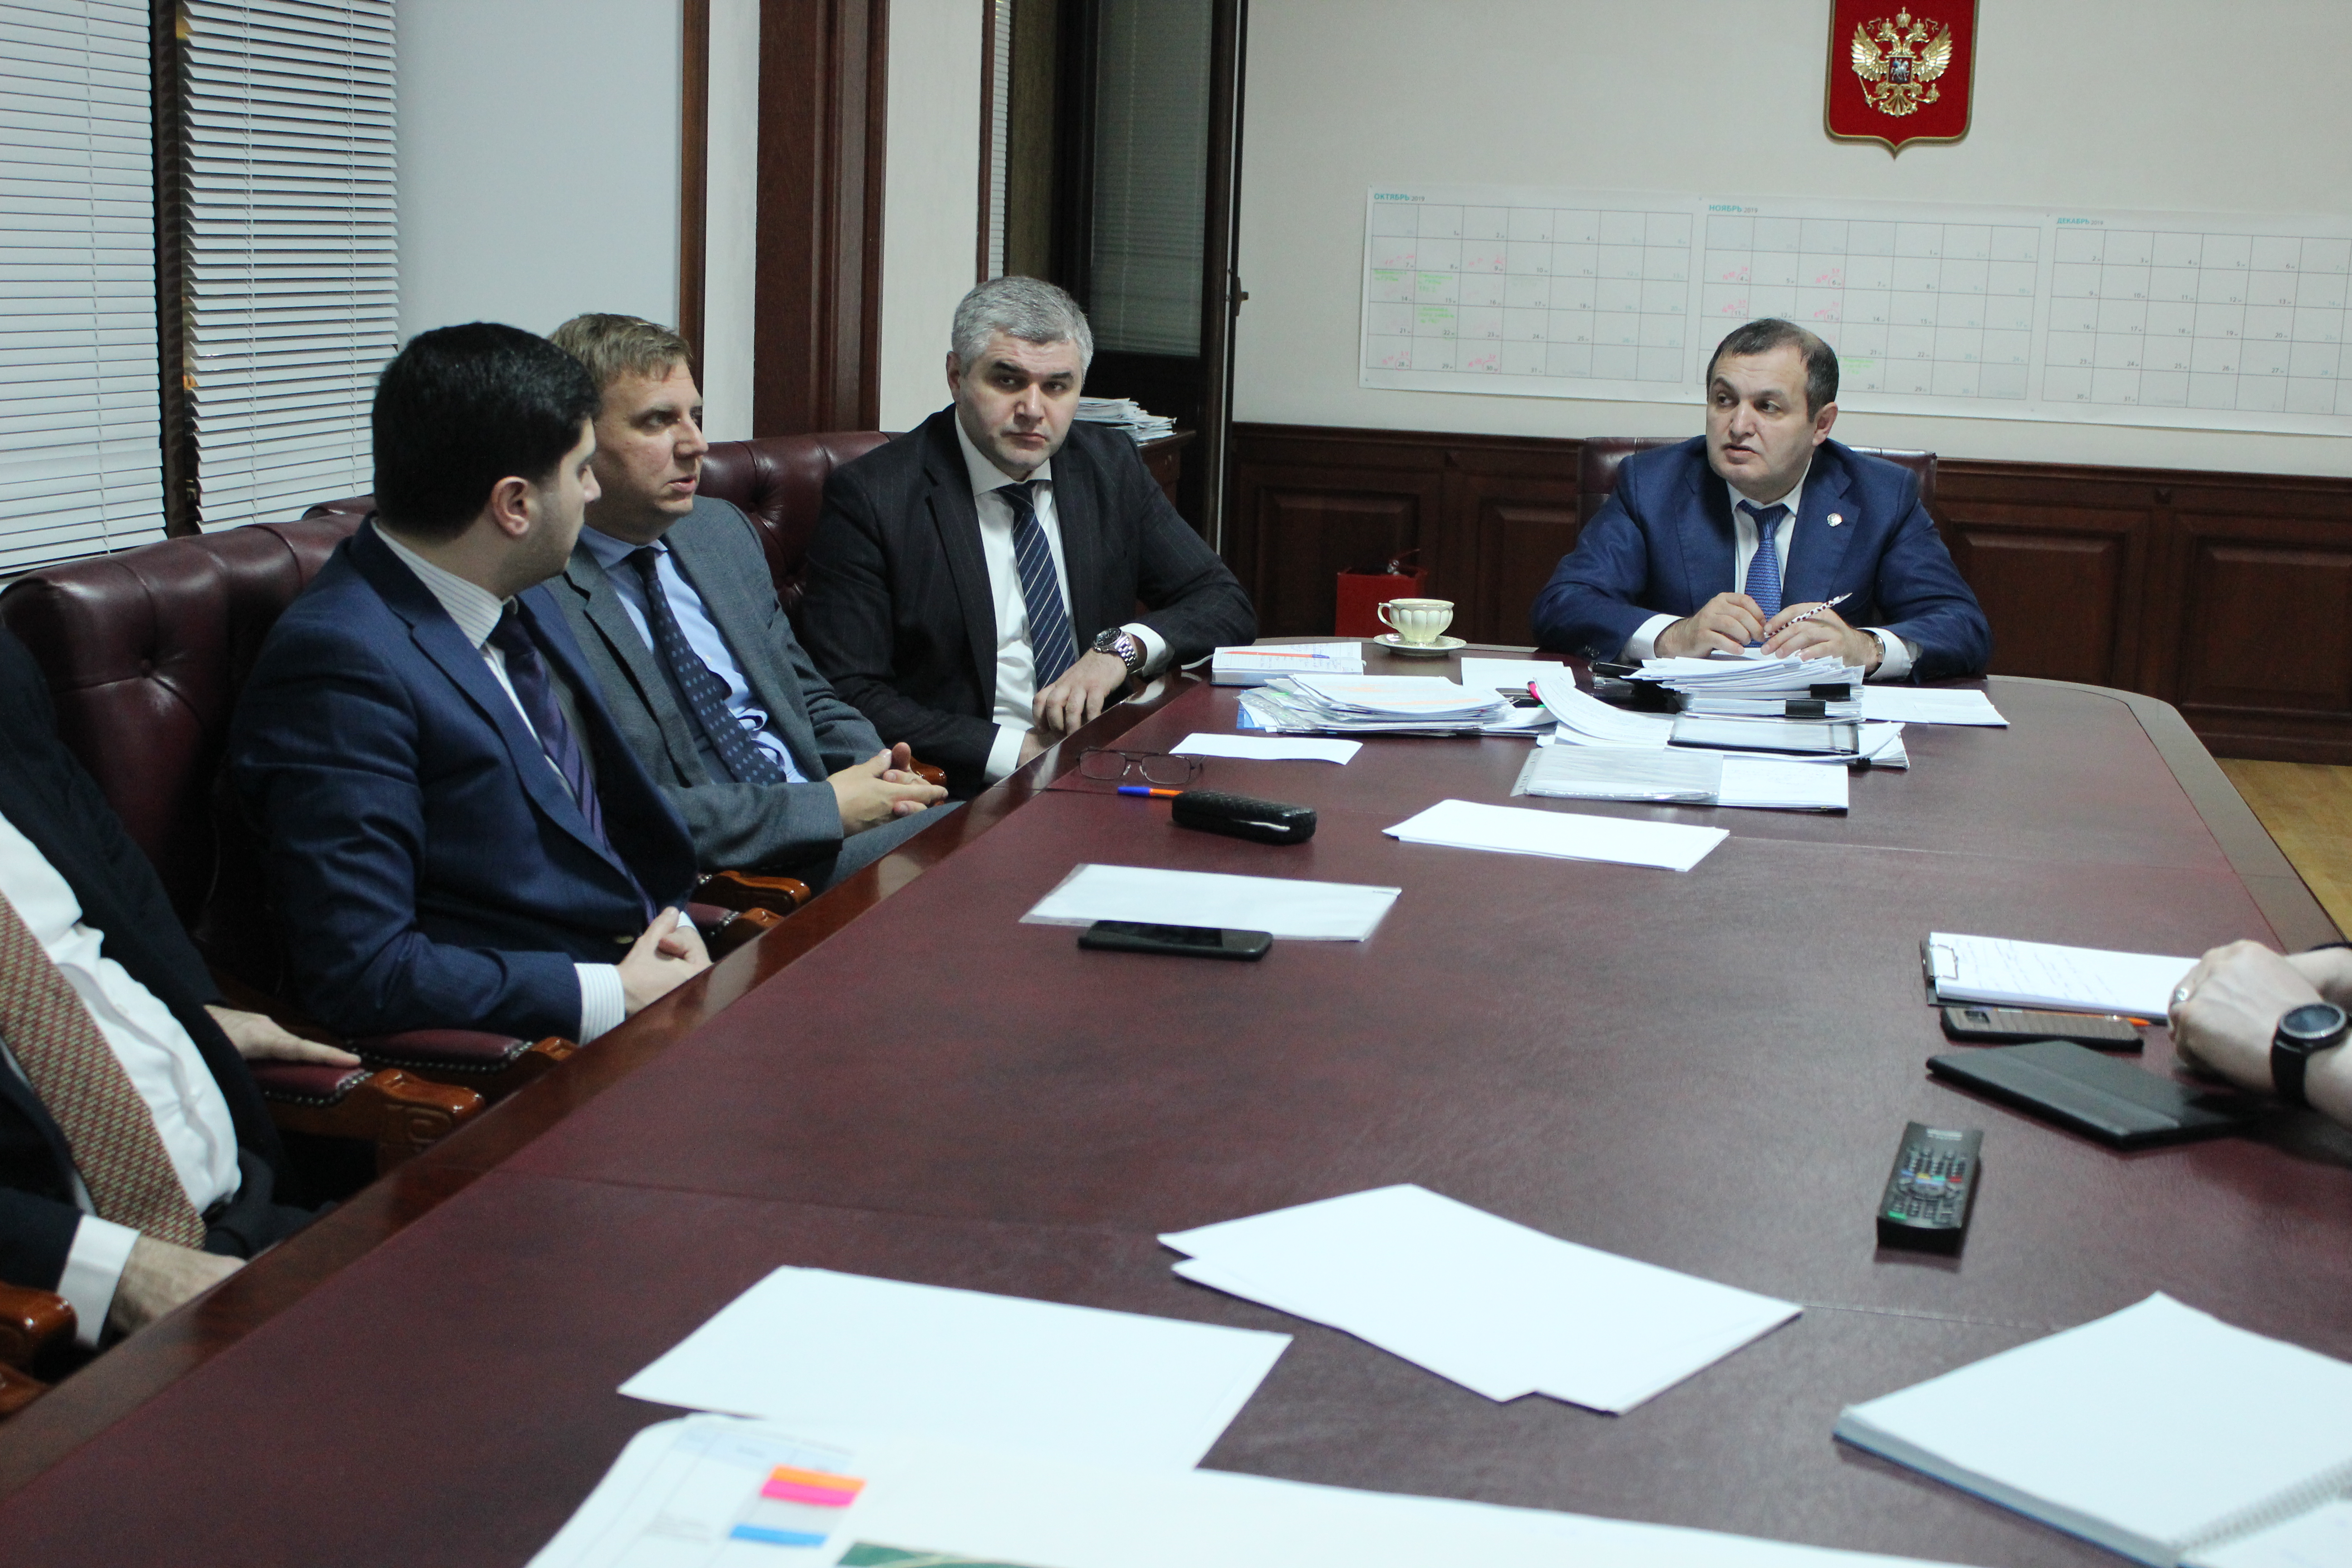 Презентация информационного портала «Земельный фонд Республики Дагестан» прошла в Минимуществе Дагестана.